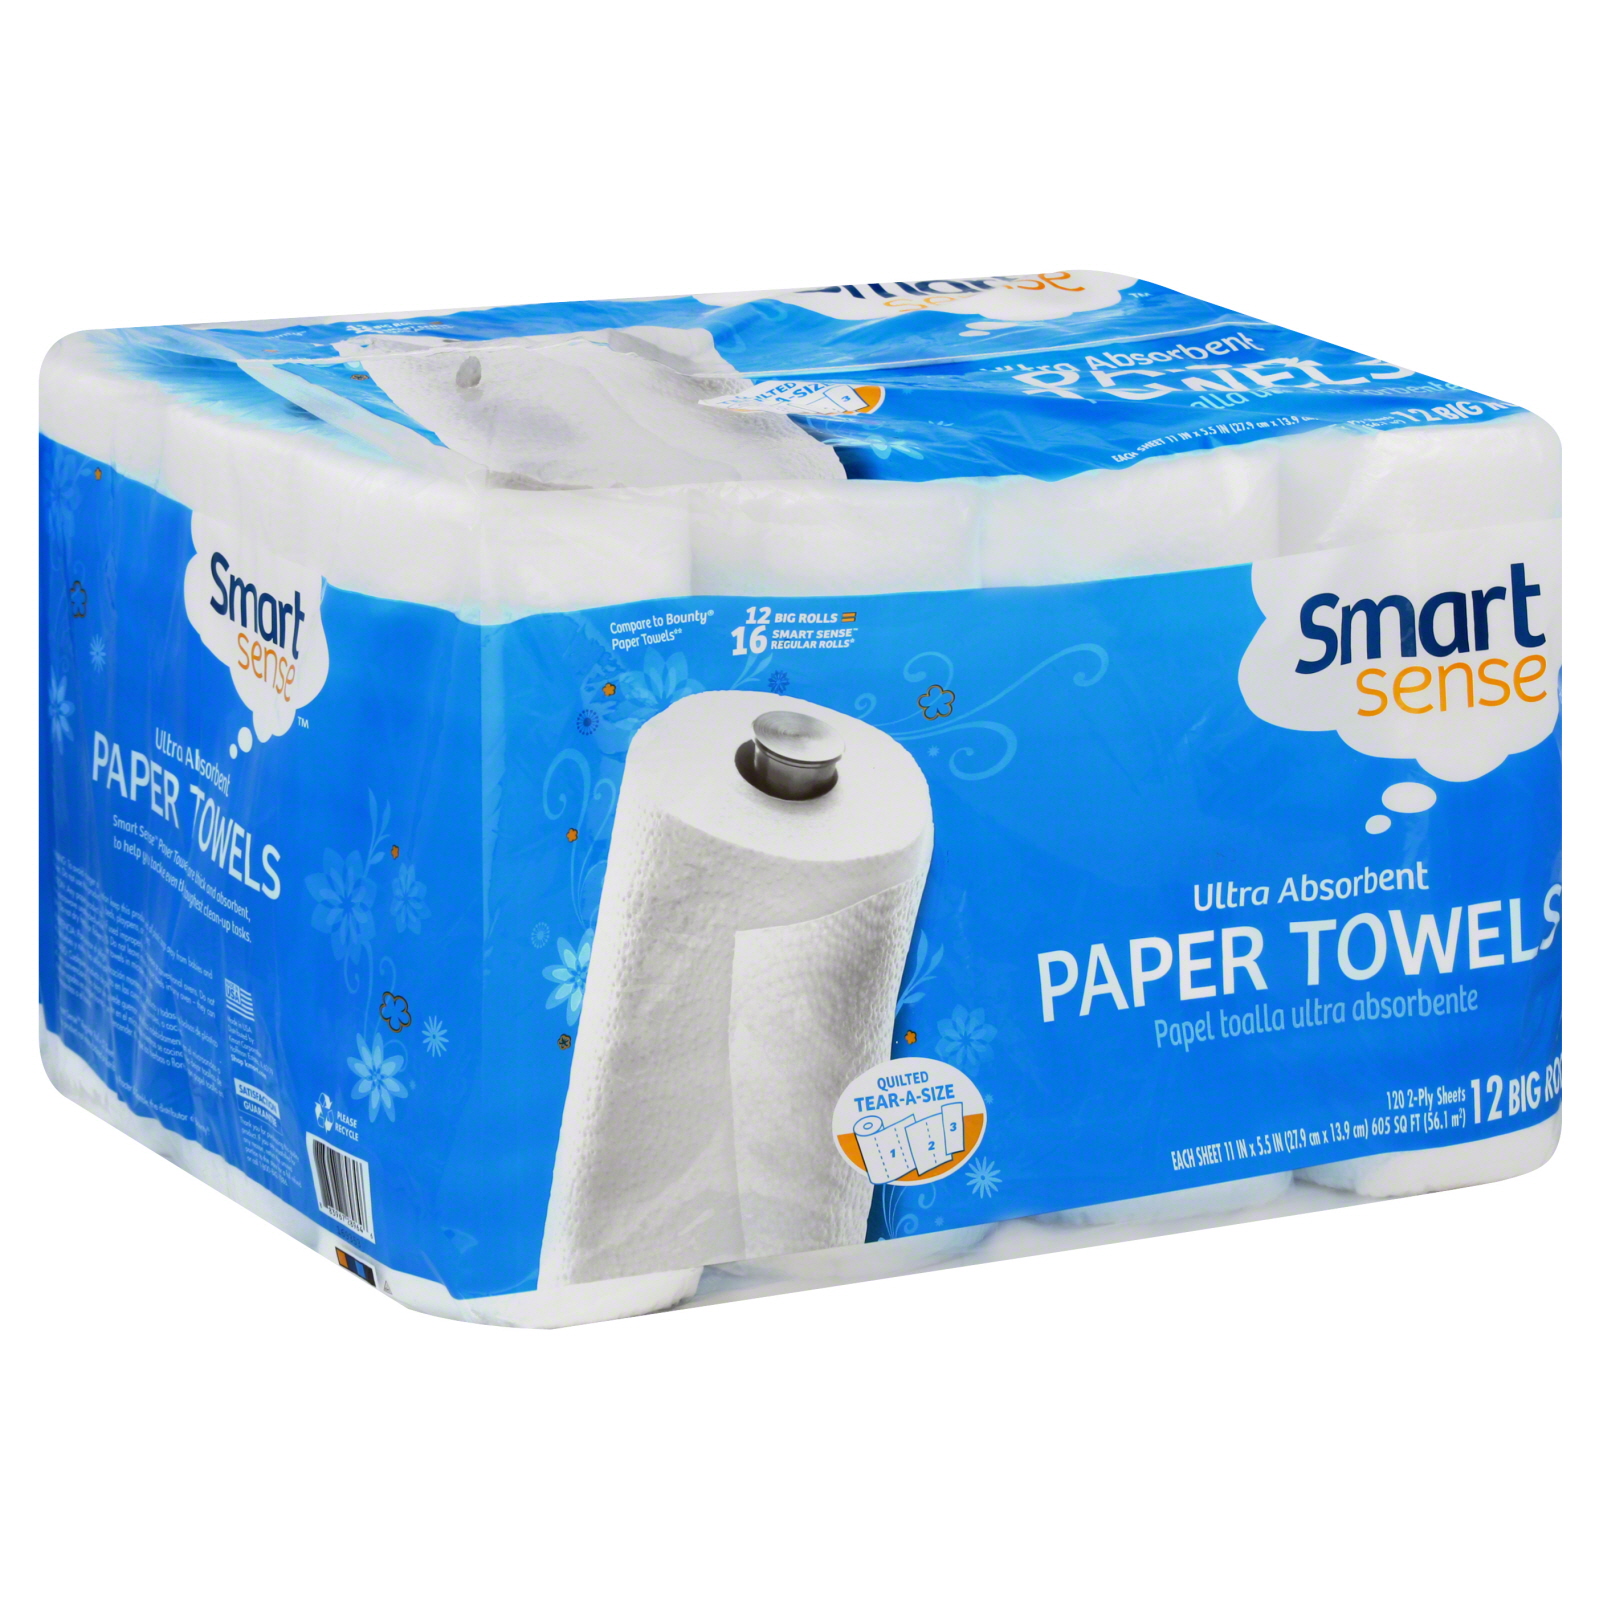 Smart Sense Paper Towels, Big Rolls, 2-Ply 12 rolls